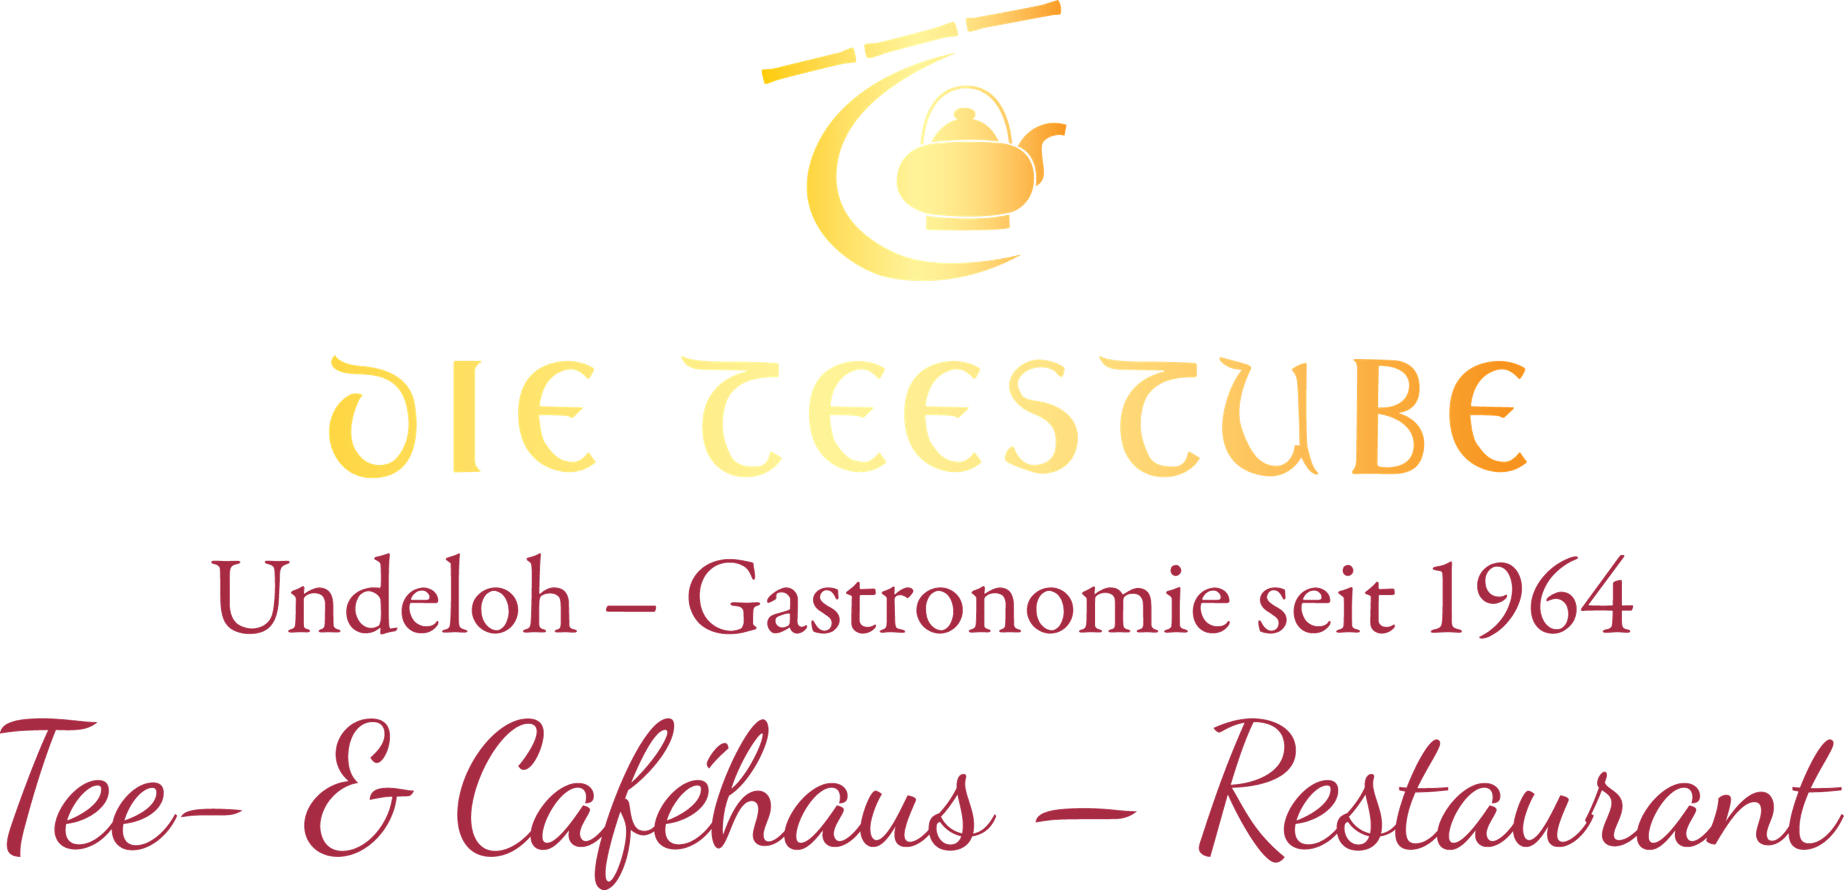 Goldene Teekanne als Logo der Teestube Undeloh - Gastronomie seit 1964